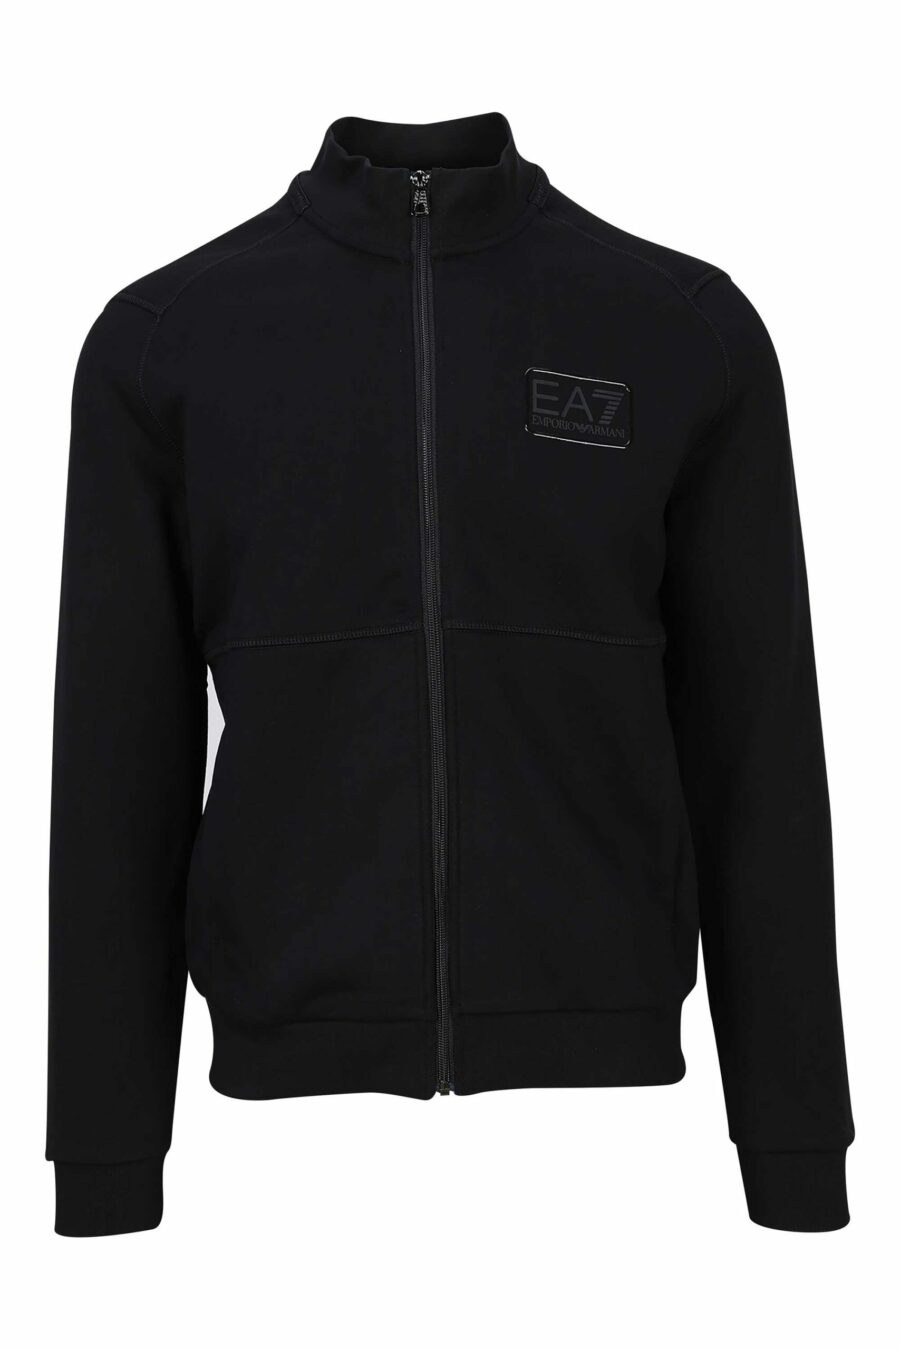 Schwarzes Sweatshirt mit Reißverschluss und Logo-Label "lux identity" - 8057767682804 skaliert